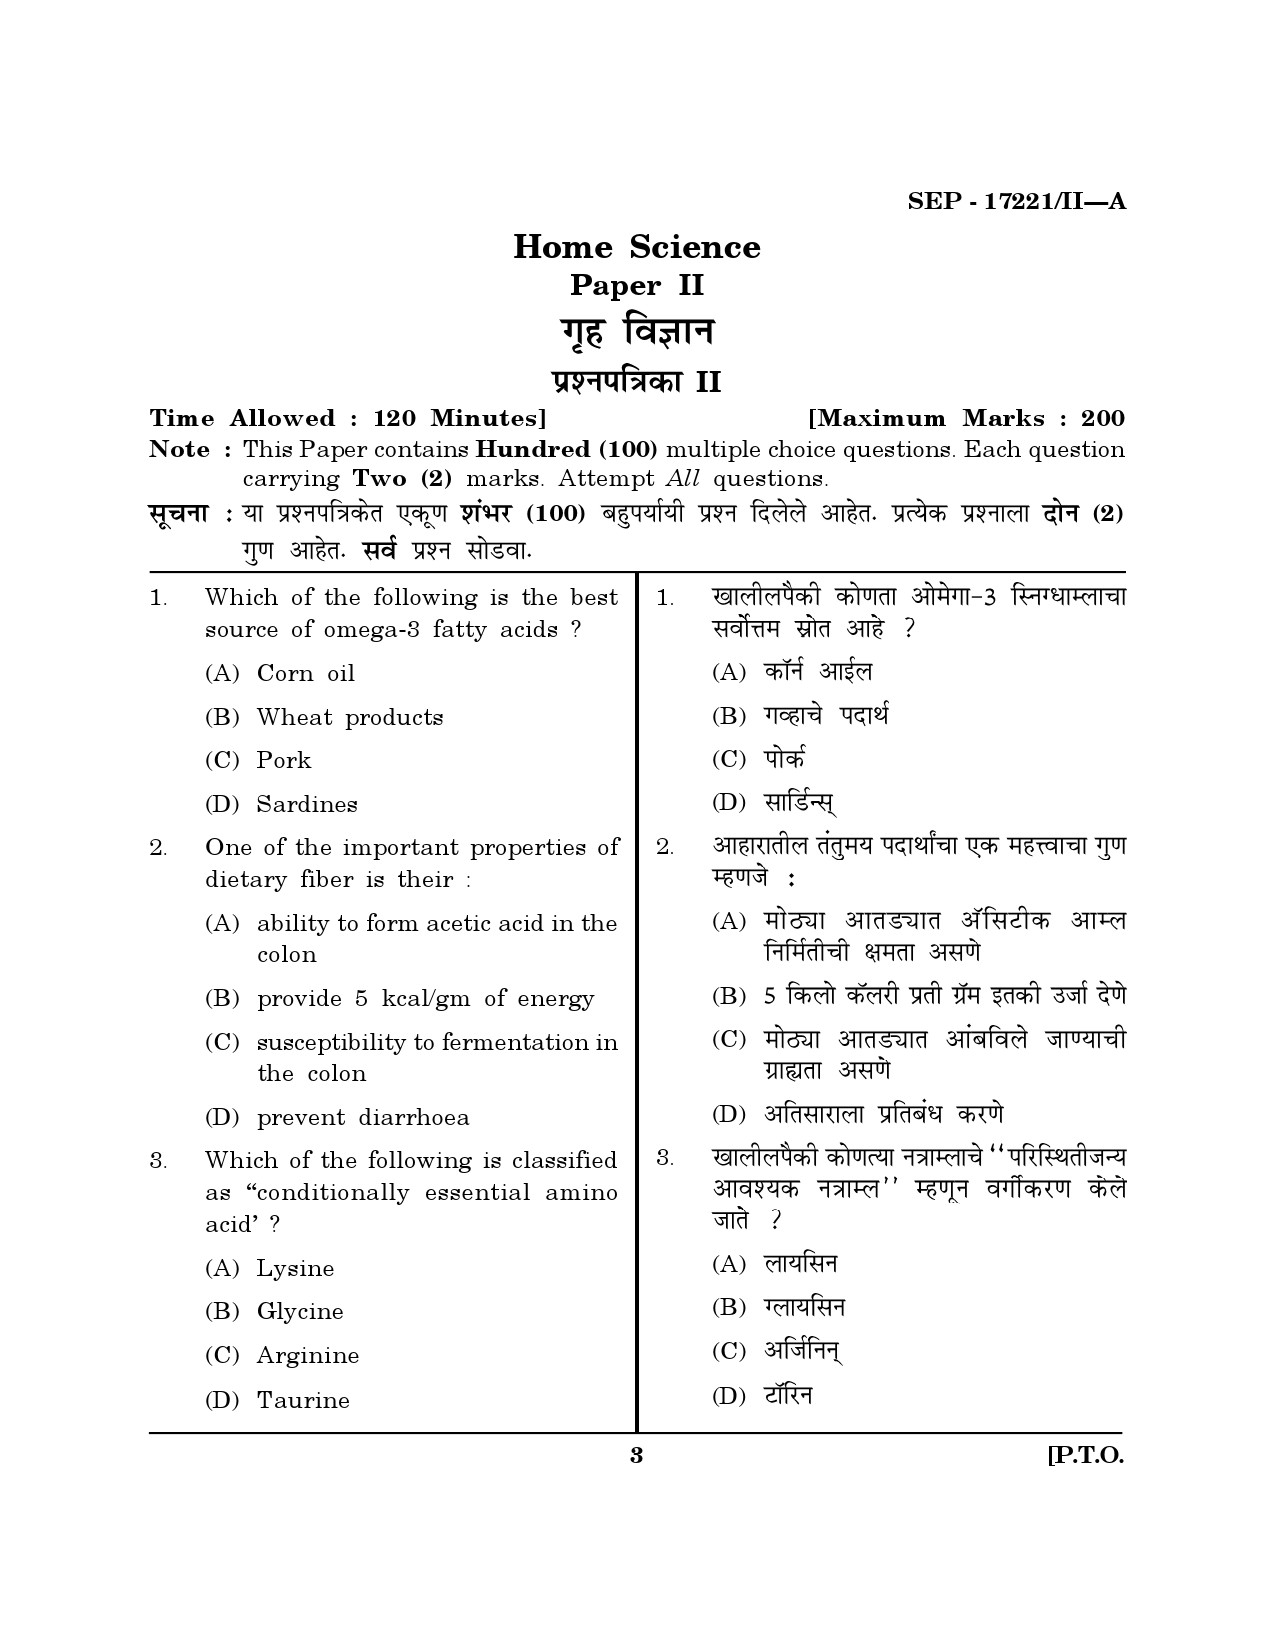 Maharashtra SET Home Science Exam Question Paper September 2021 2